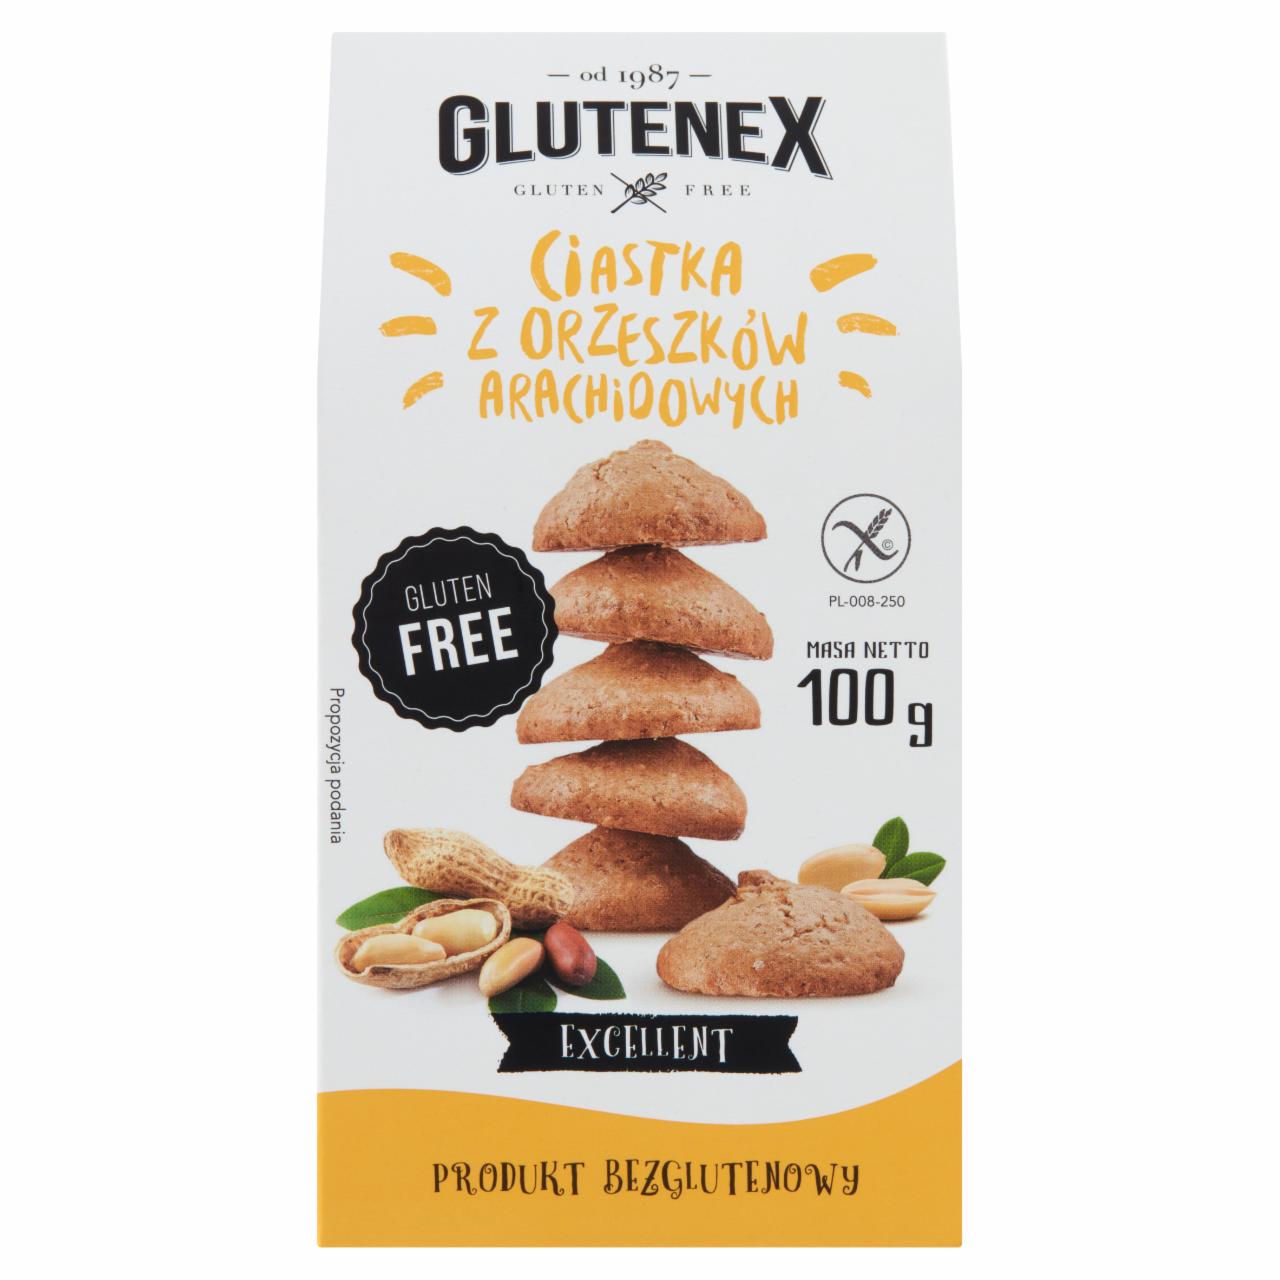 Zdjęcia - Glutenex Ciastka z orzeszków arachidowych 100 g